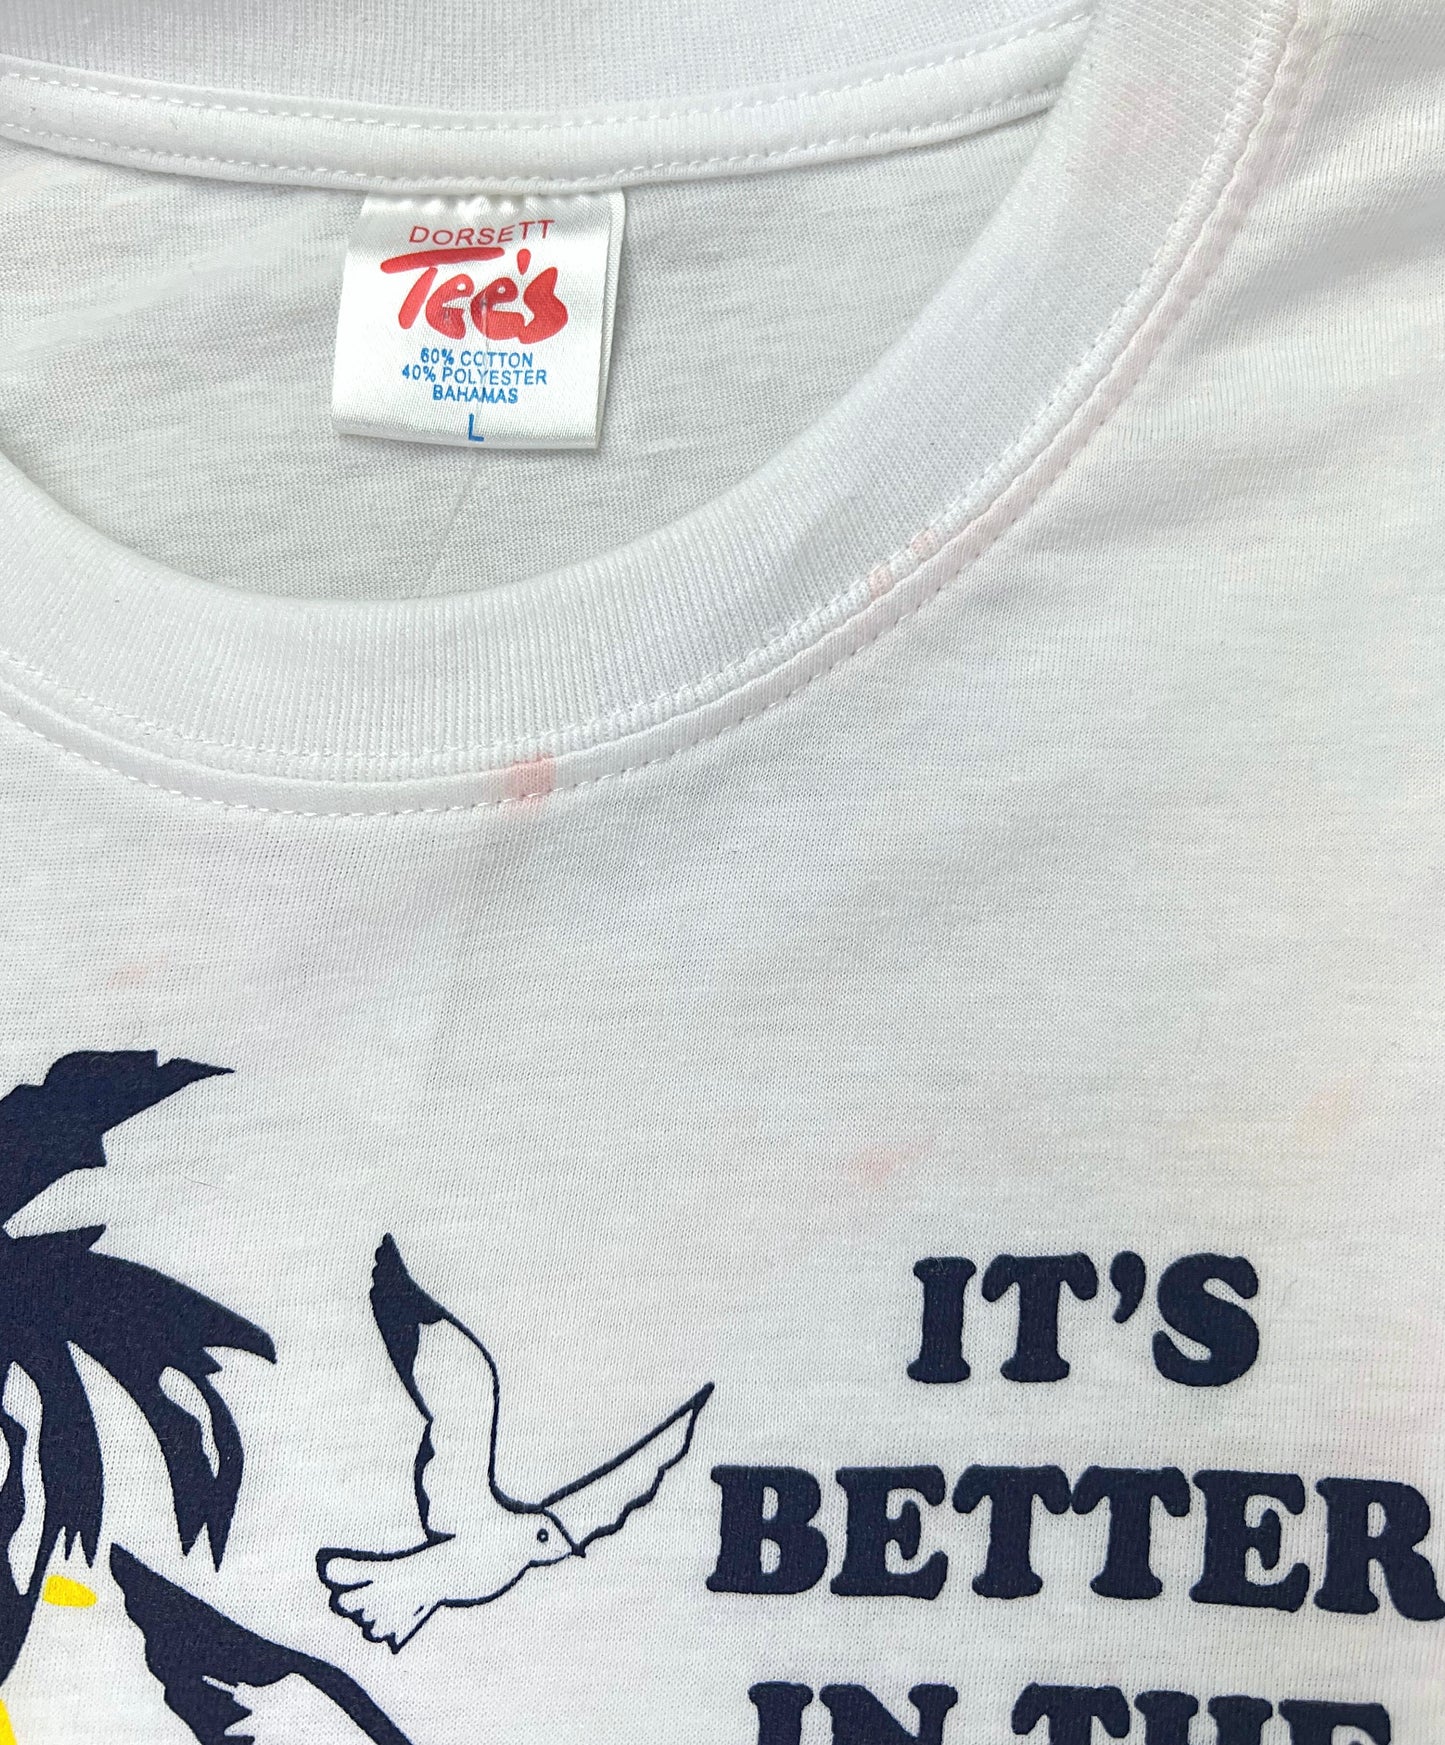 70’s It’s Better in the Bahamas Souvenir Tourist T-shirt Size Large